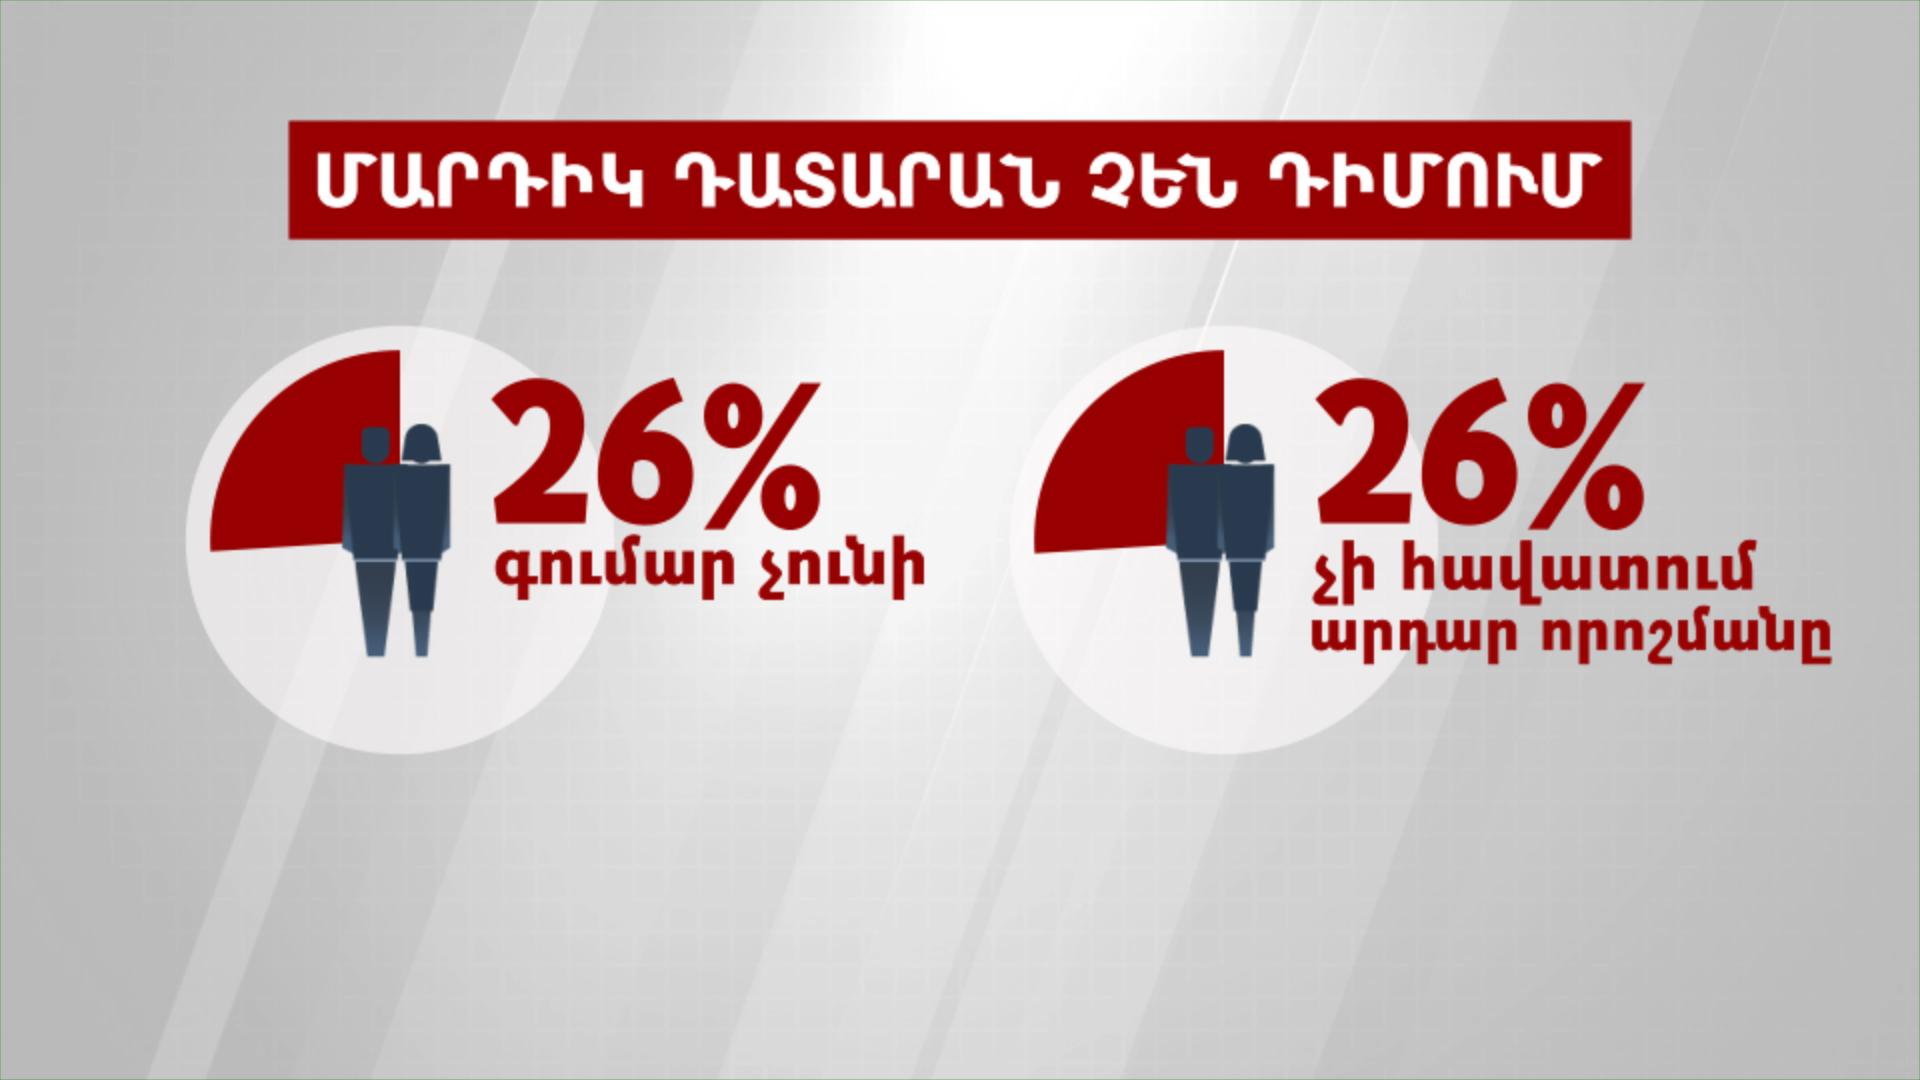 Թվերը խոսում են. Ինչու հայաստանցիները չեն վստահում դատարաններին